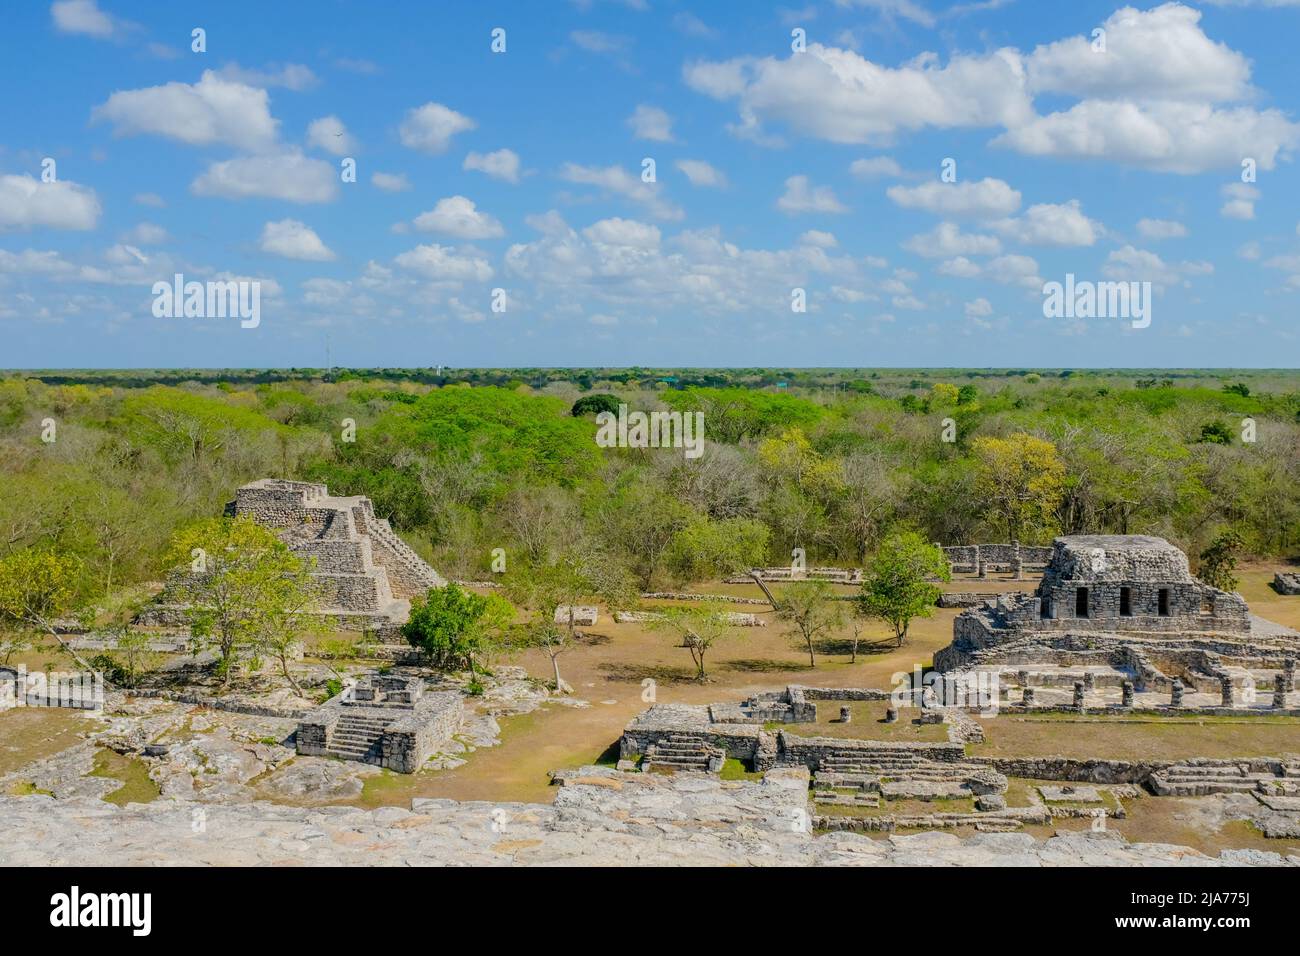 Le site archéologique maya de Mayapan, Yucatan Mexique Banque D'Images